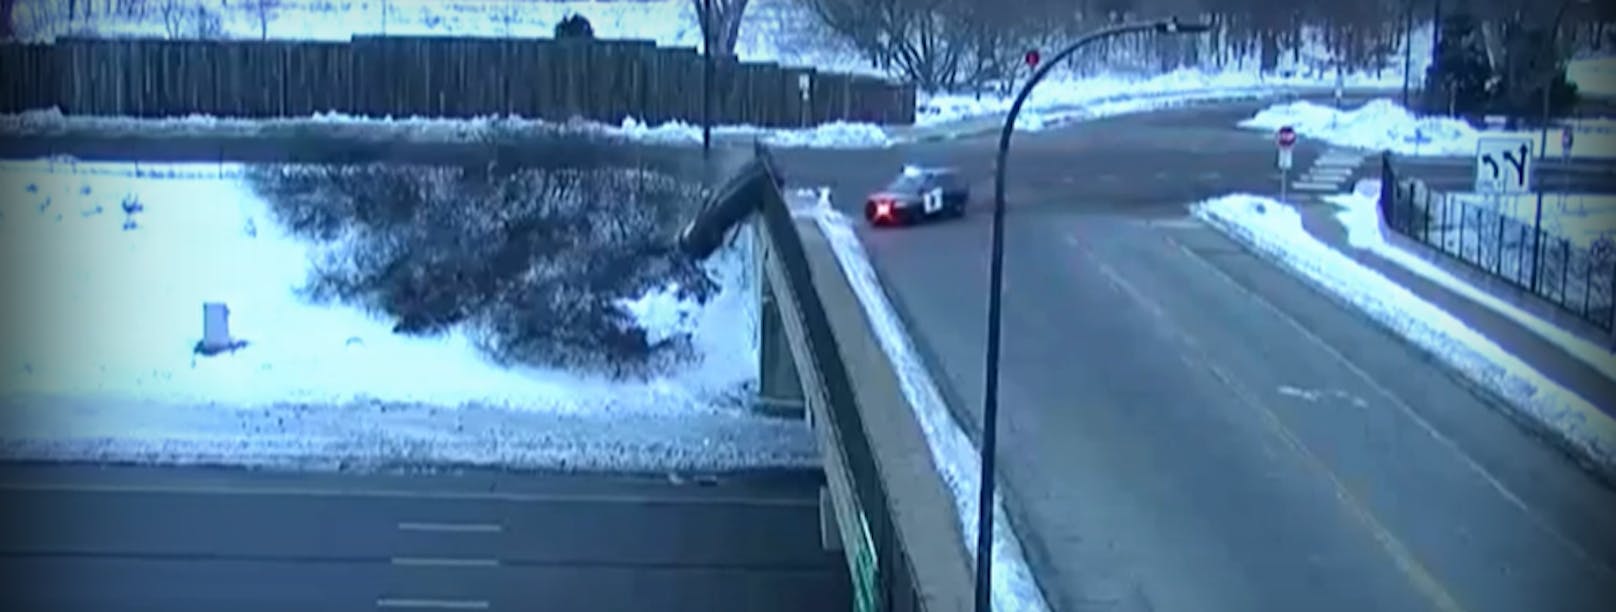 Teenager stürzt nach Verfolgungsjagd mit Auto von Brücke.